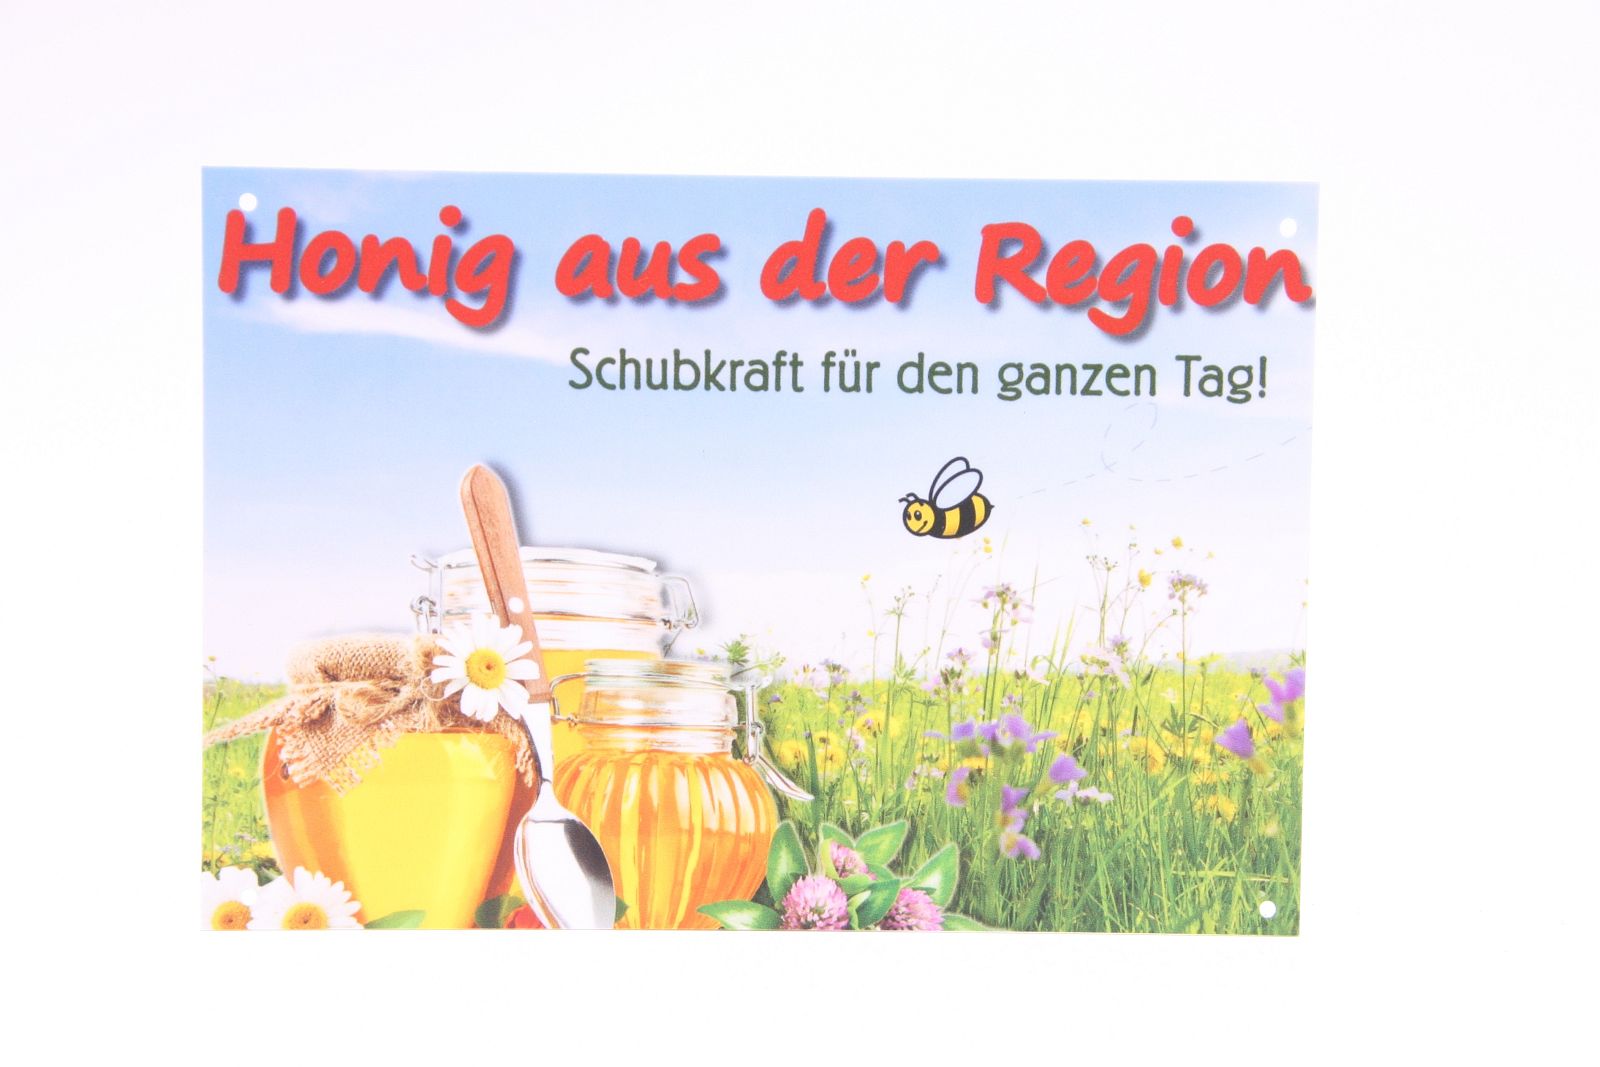 Honigwerbeschild "Honig aus der Region" 21 x 14,5 cm